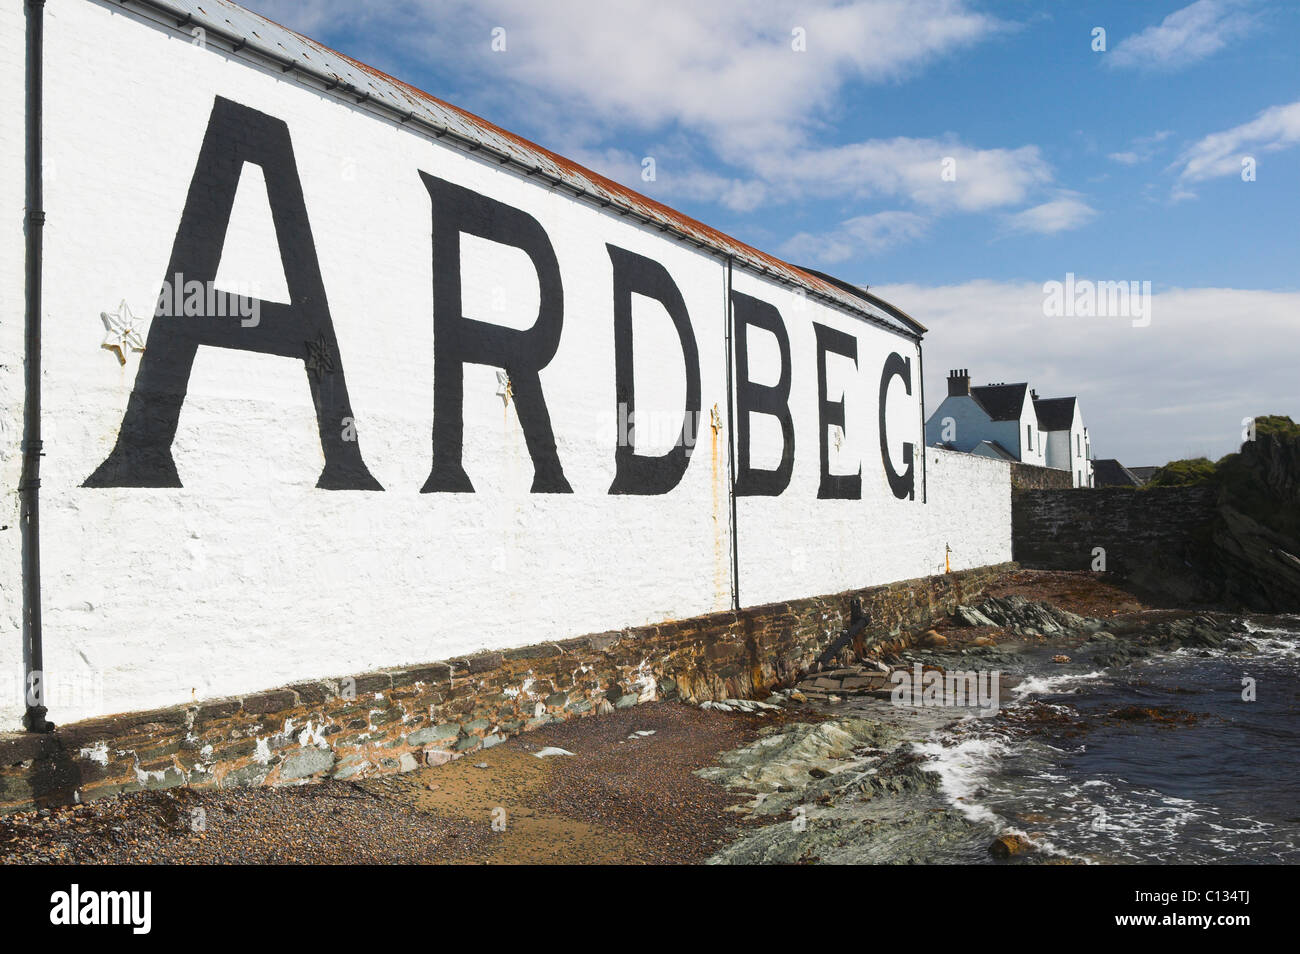 Ardbeg Distillery, vicino a Port Ellen, Isle of Islay, Argyll and Bute, Scotland, Regno Unito. Foto Stock